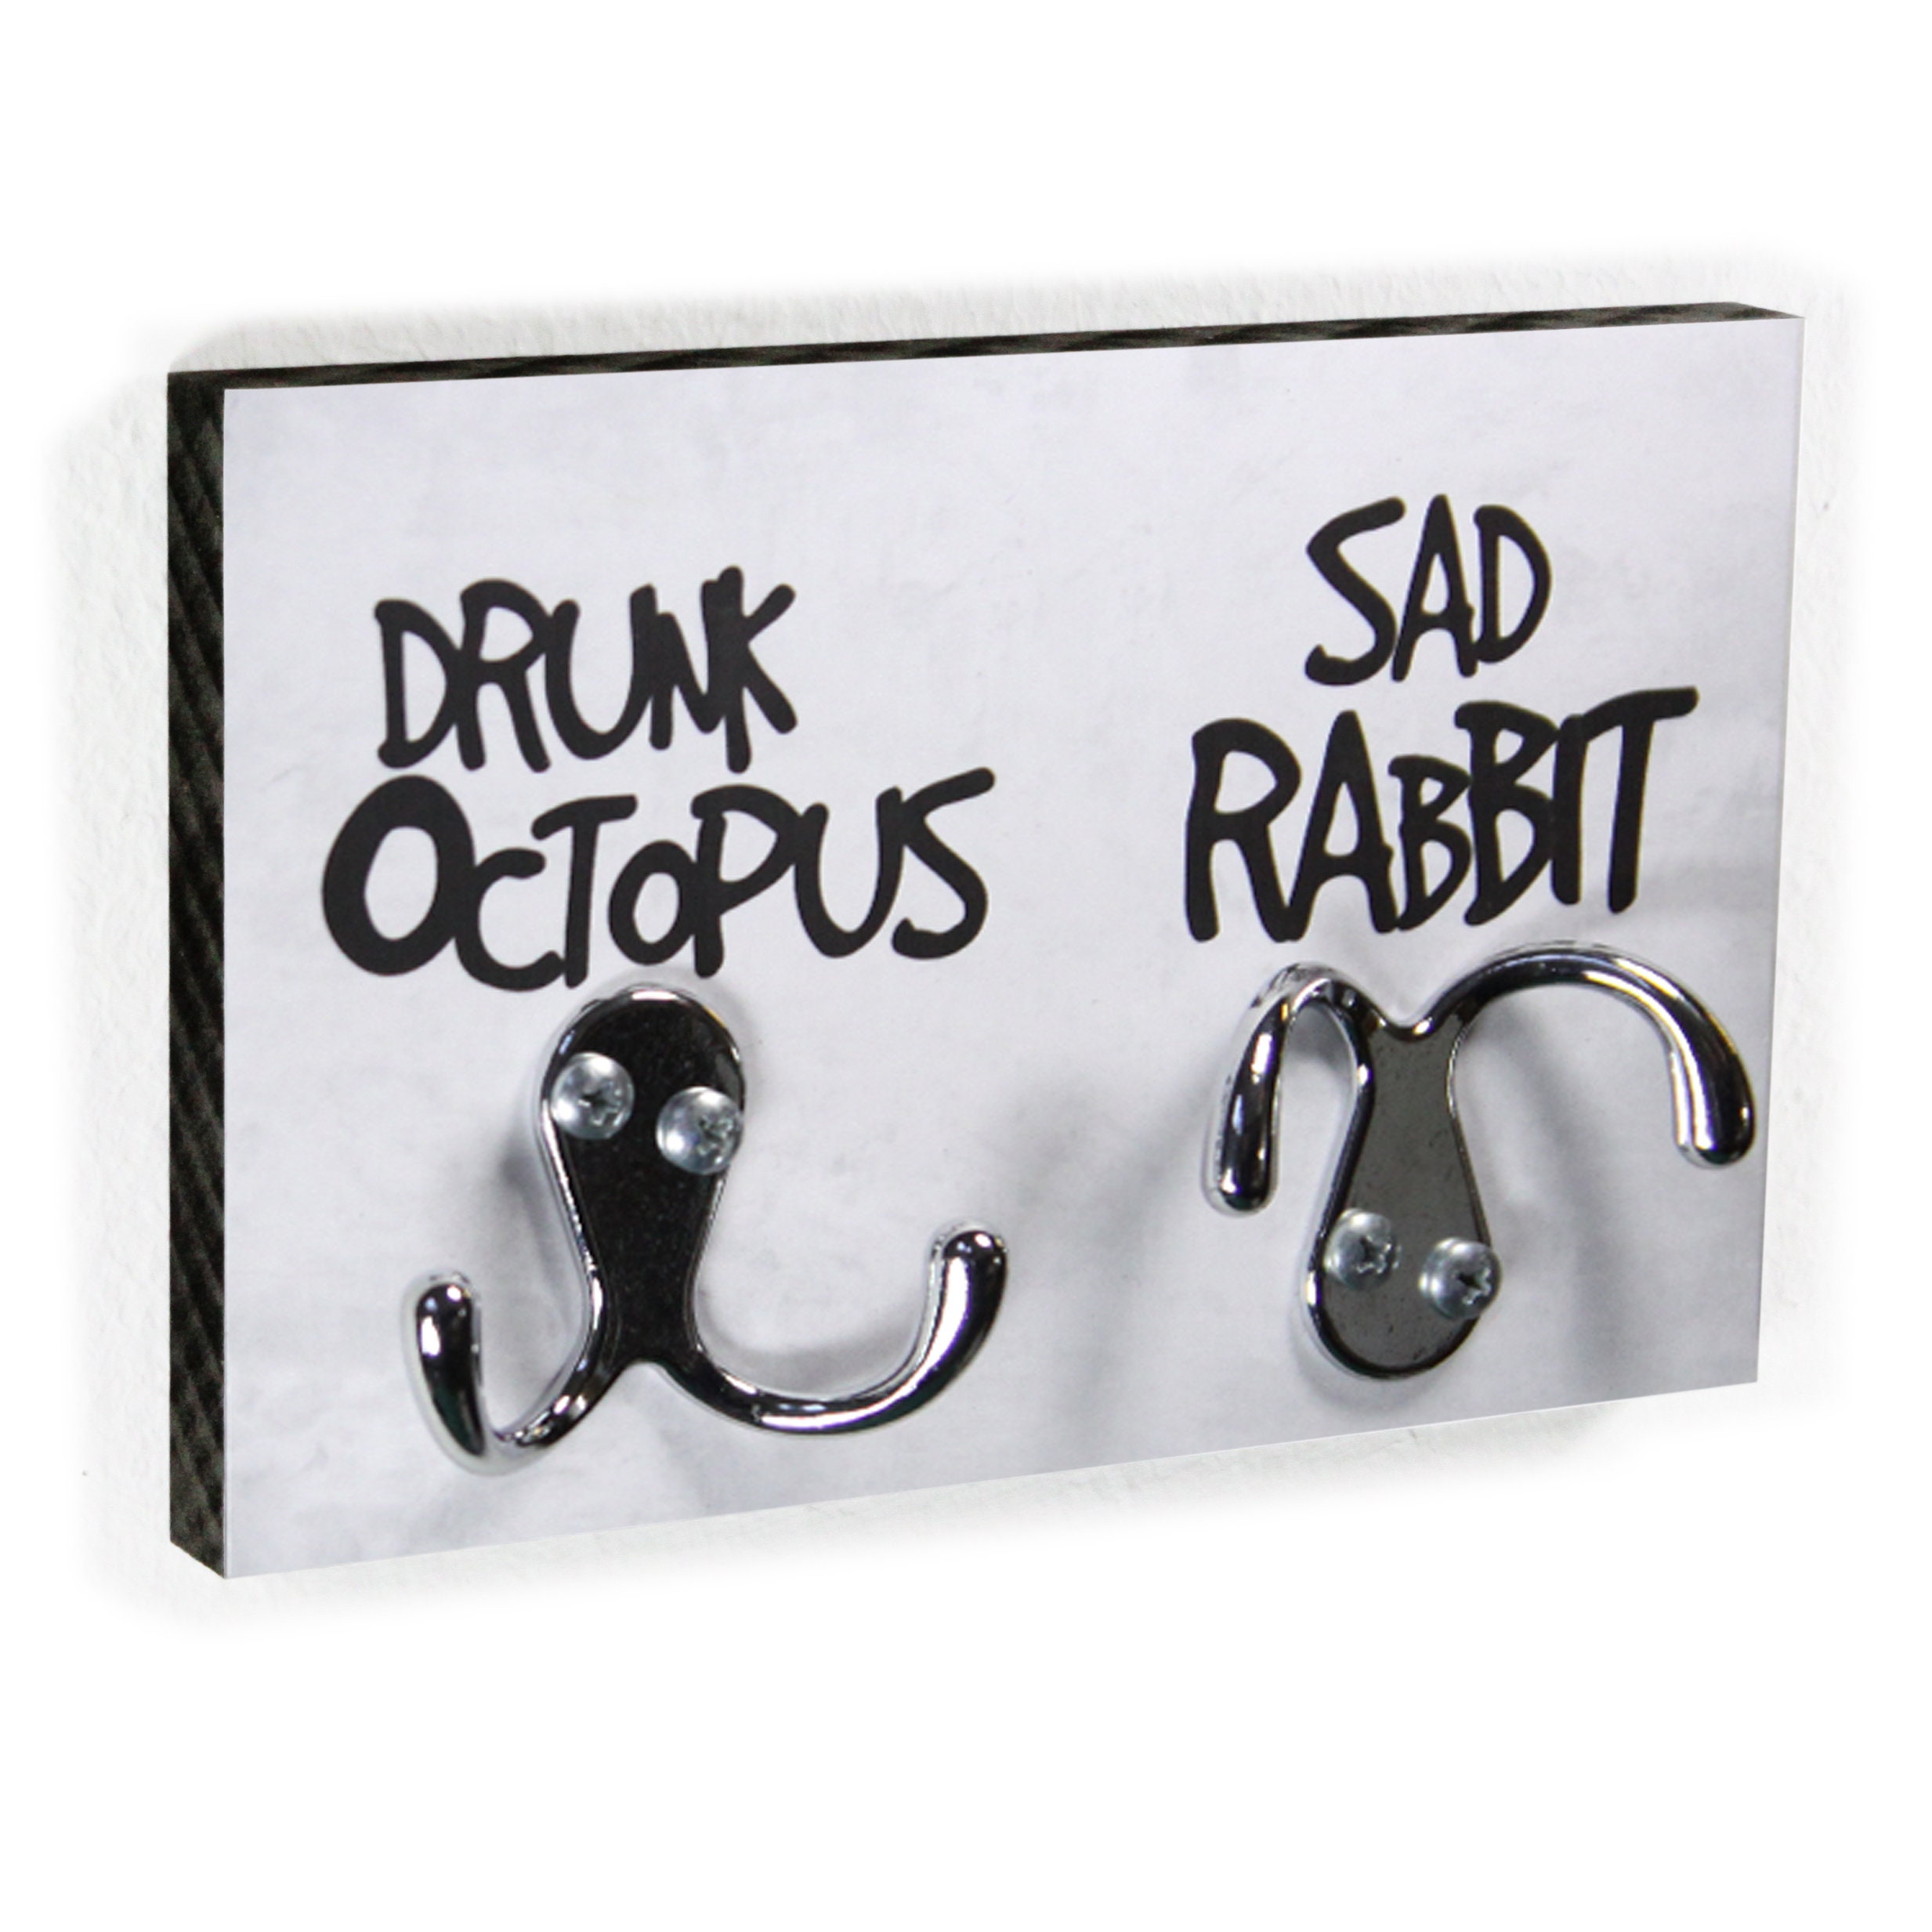 Key Board Drunk Octopus & Sad Rabbit Funny Hook Bar for Wardrobe